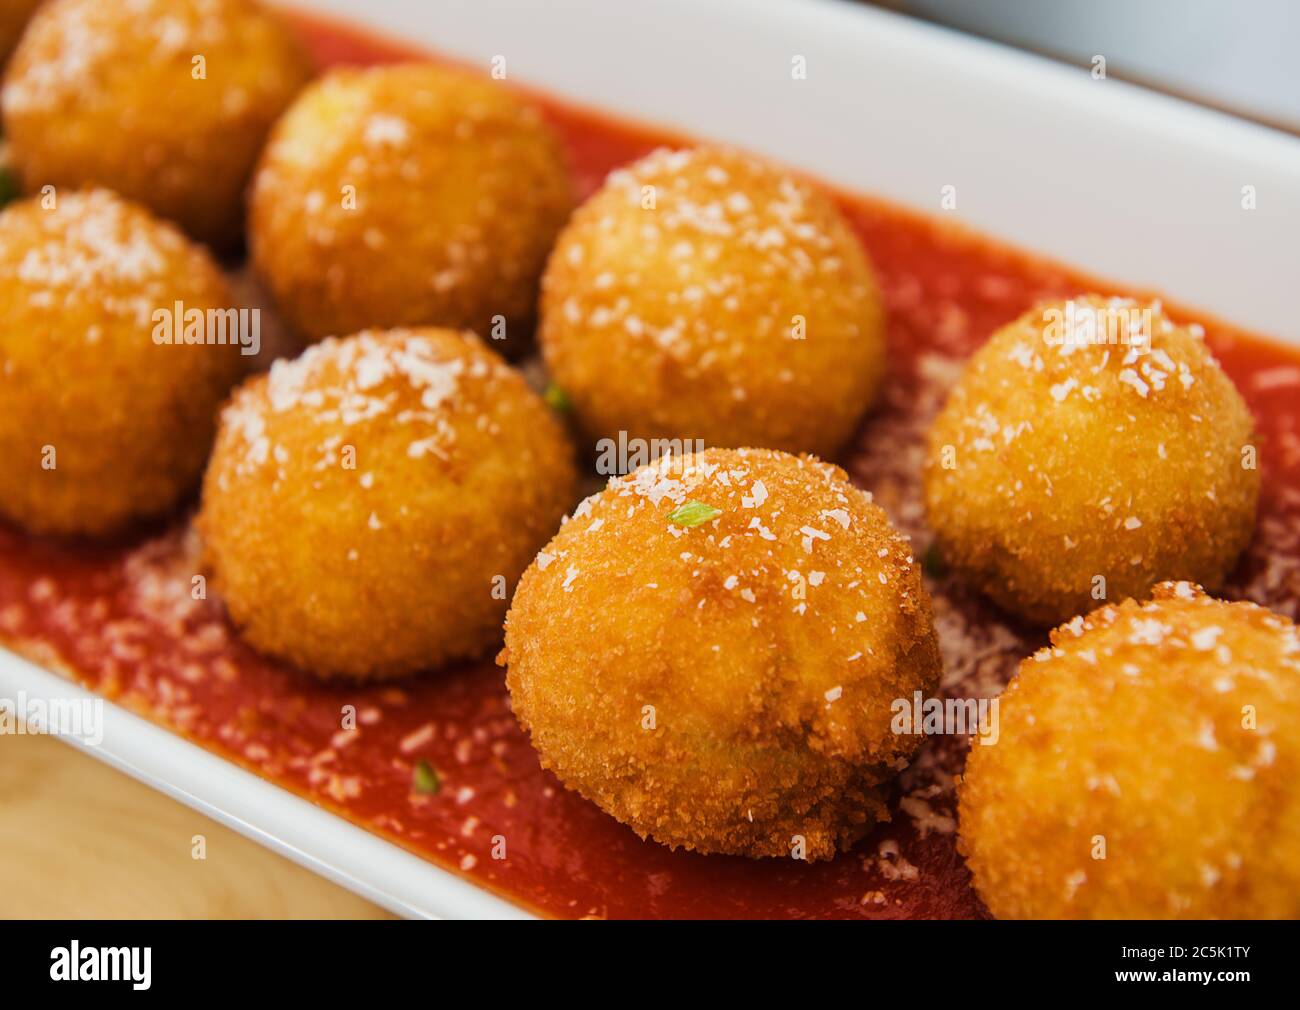 mozzarella balls in marinara sauce Stock Photo